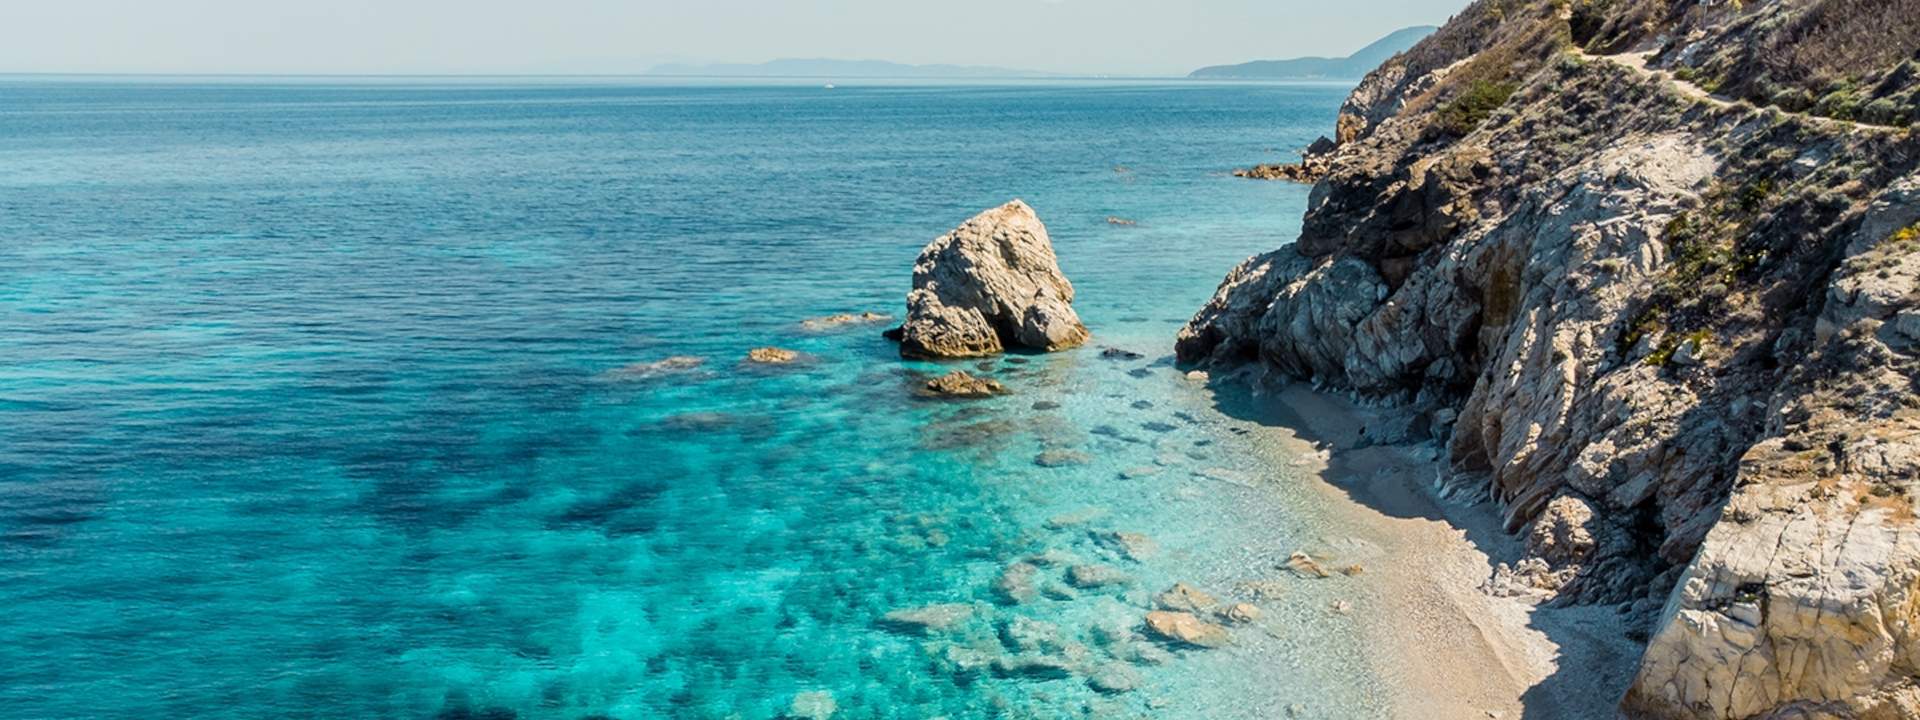 Scopri l'isola d'Elba e Capraia in catamarano